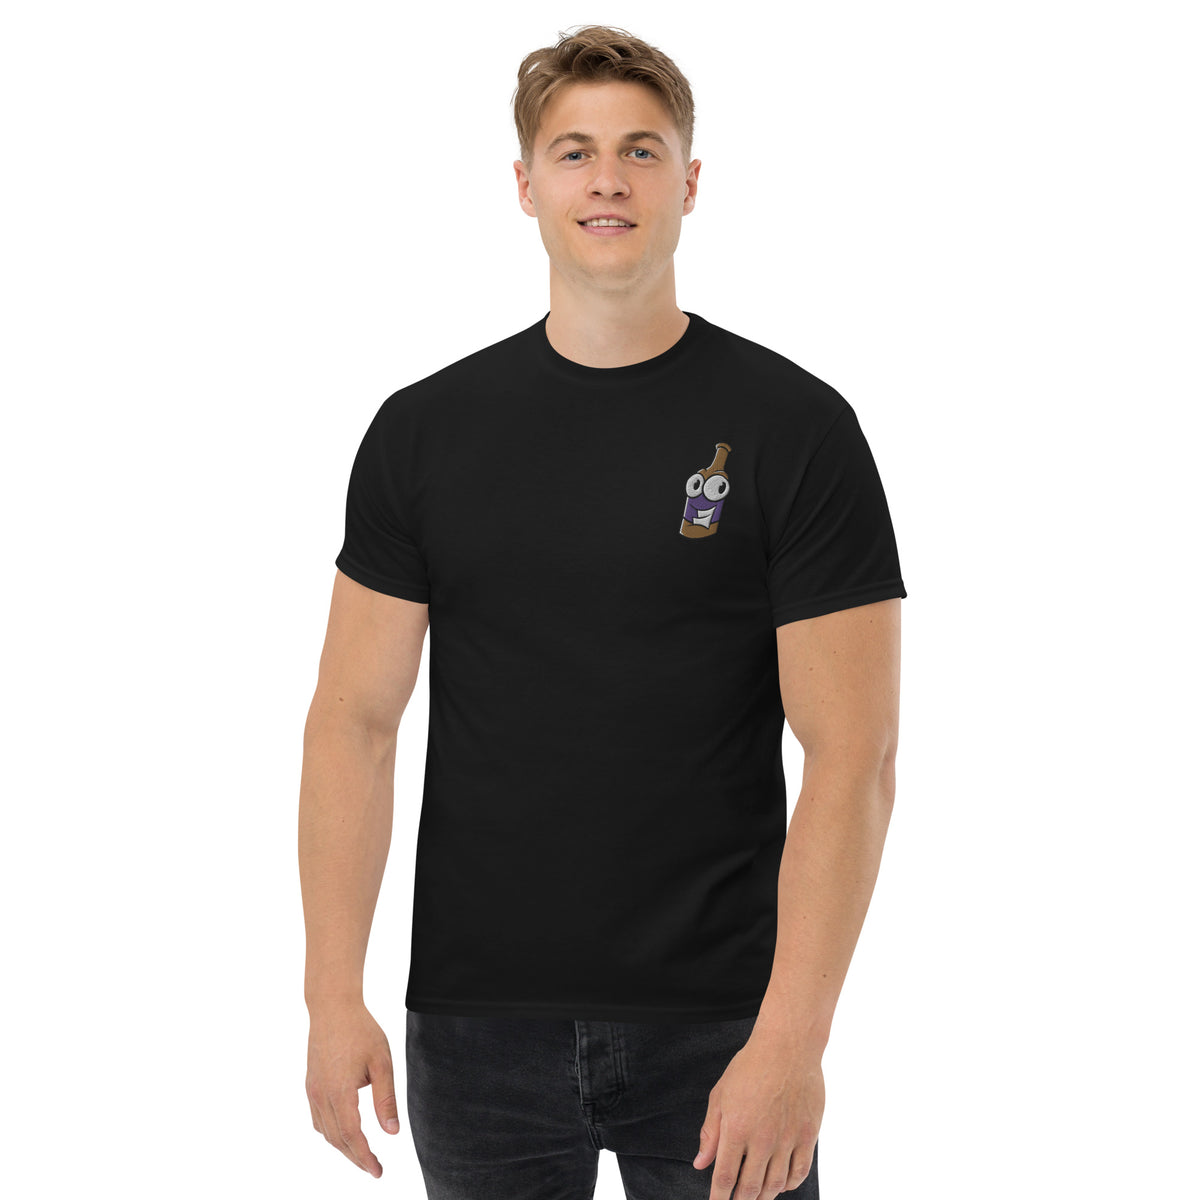 Pullle - Retro-T-Shirt für Herren mit Stick